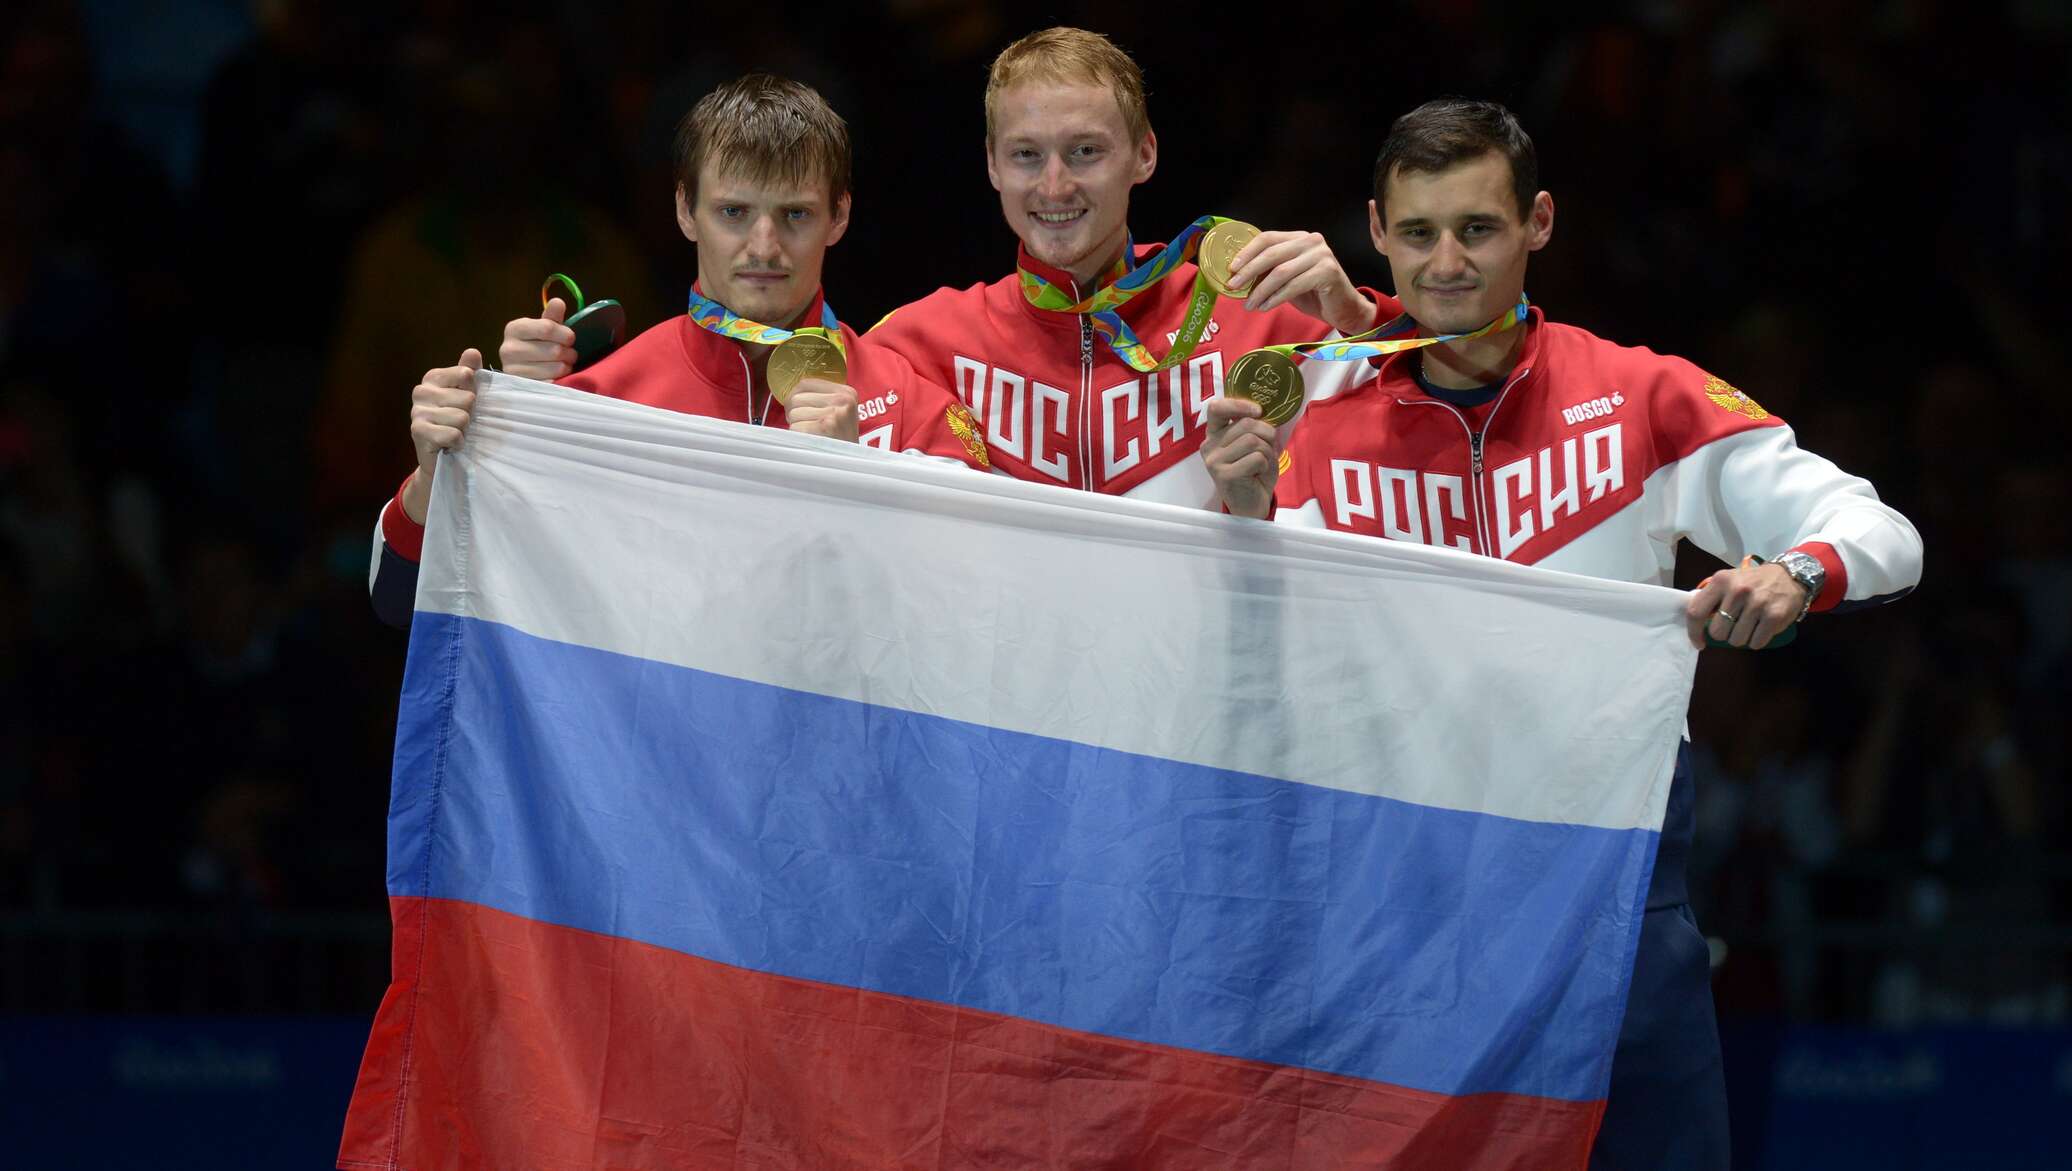 Россия 5 медалей